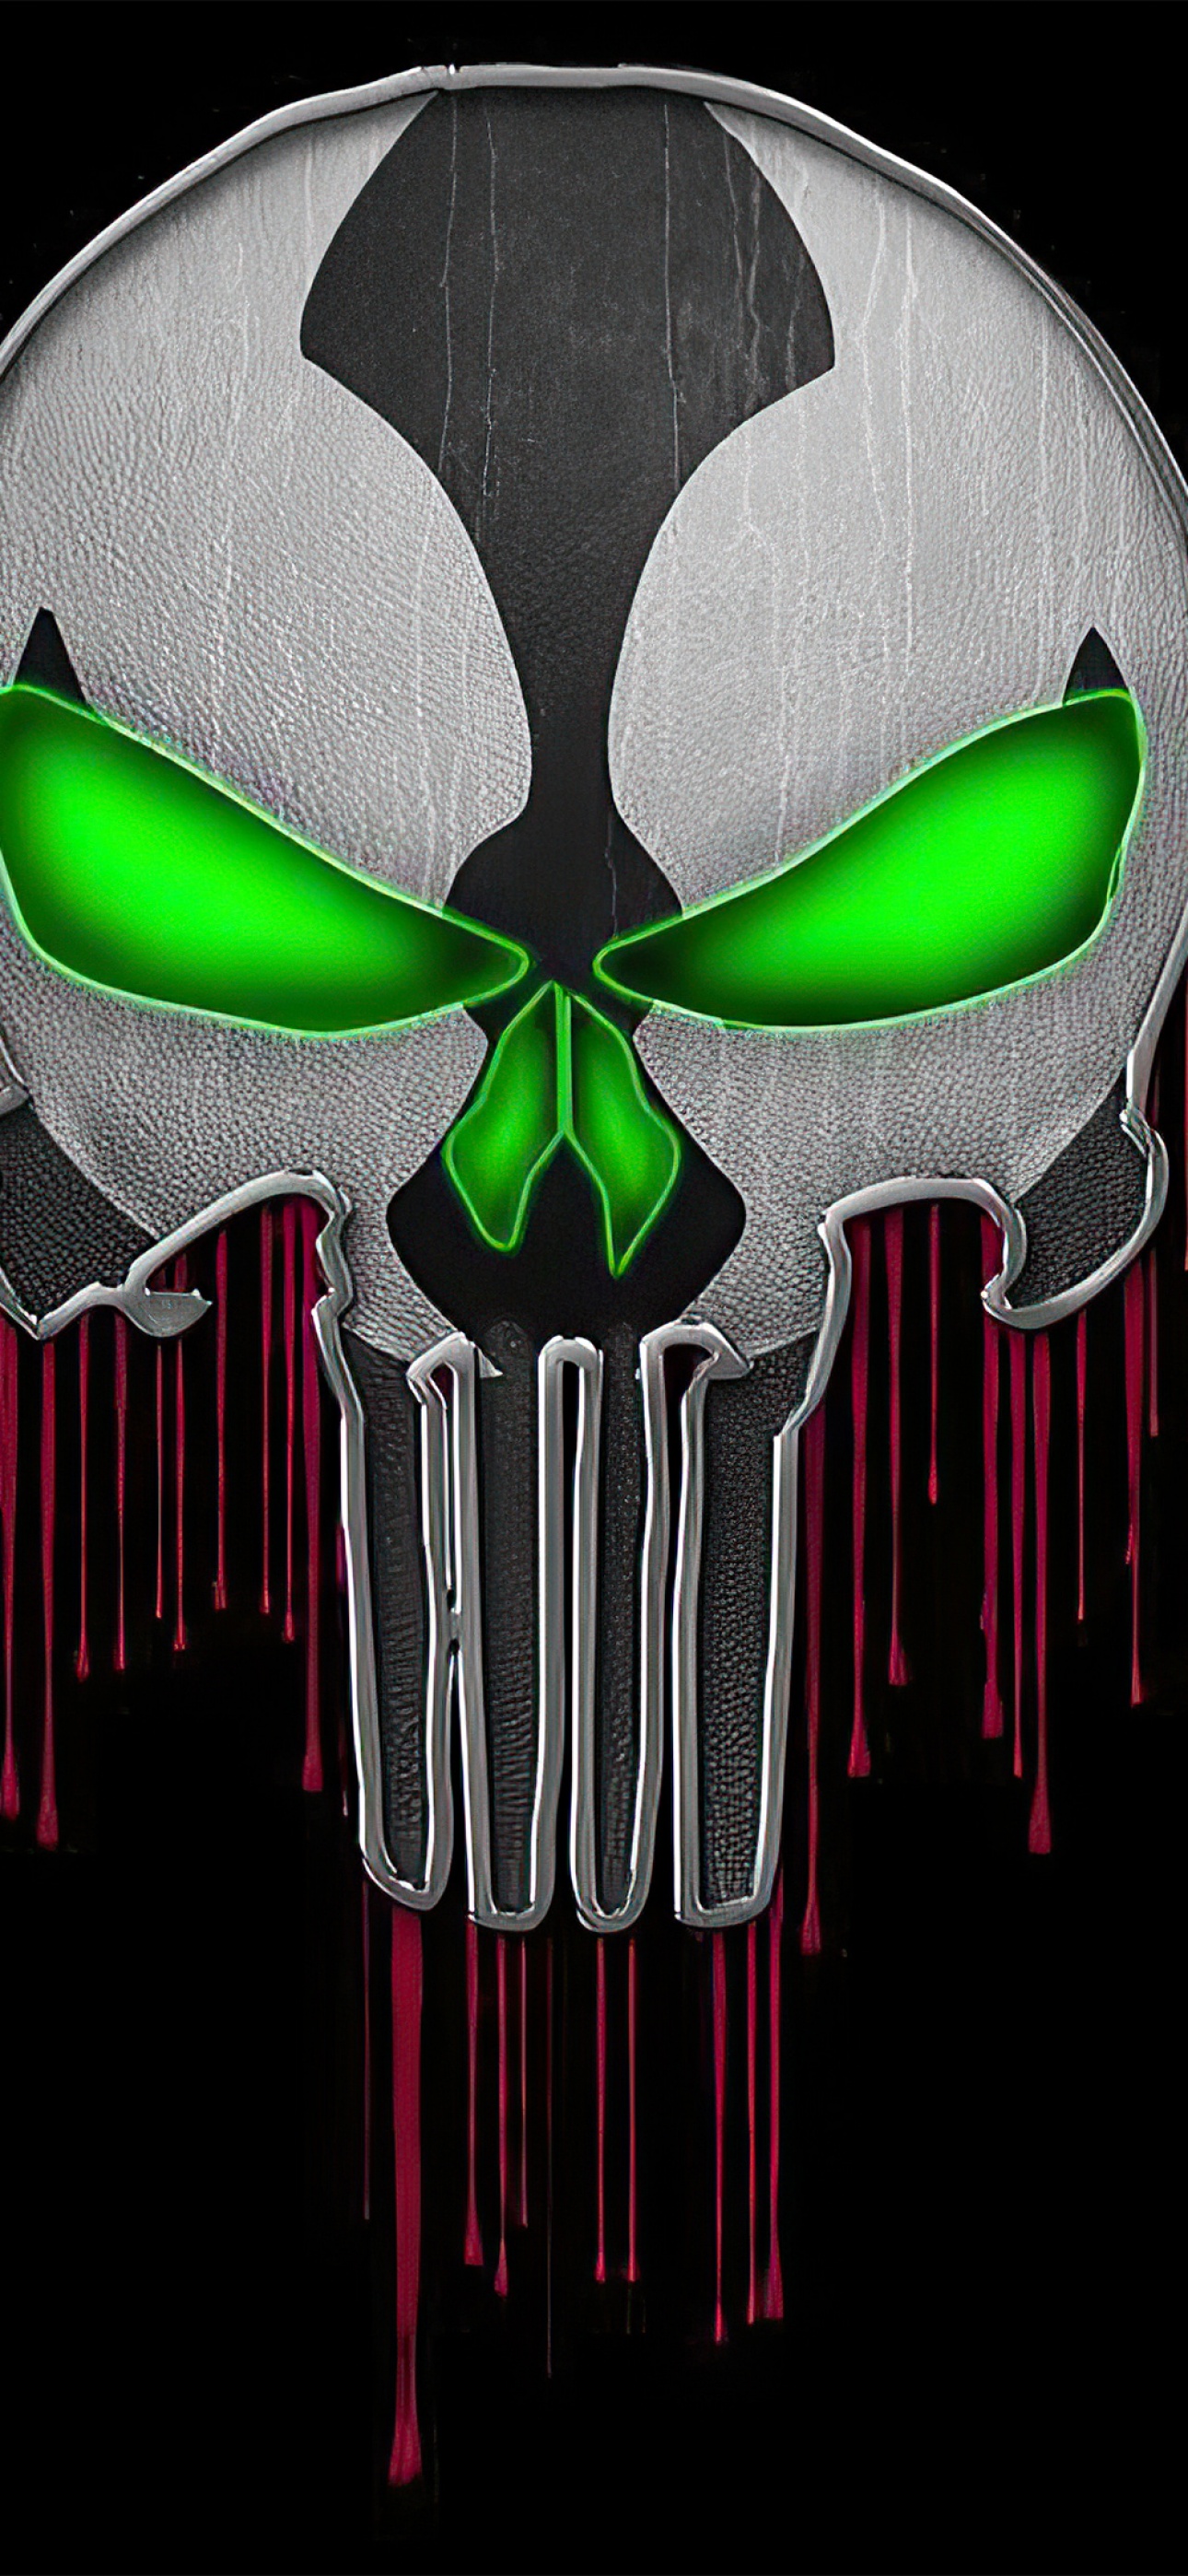 Skull Desktop Hình nền Hình ảnh Skeleton Death  Chán nản png tải về  Miễn  phí trong suốt Xương png Tải về